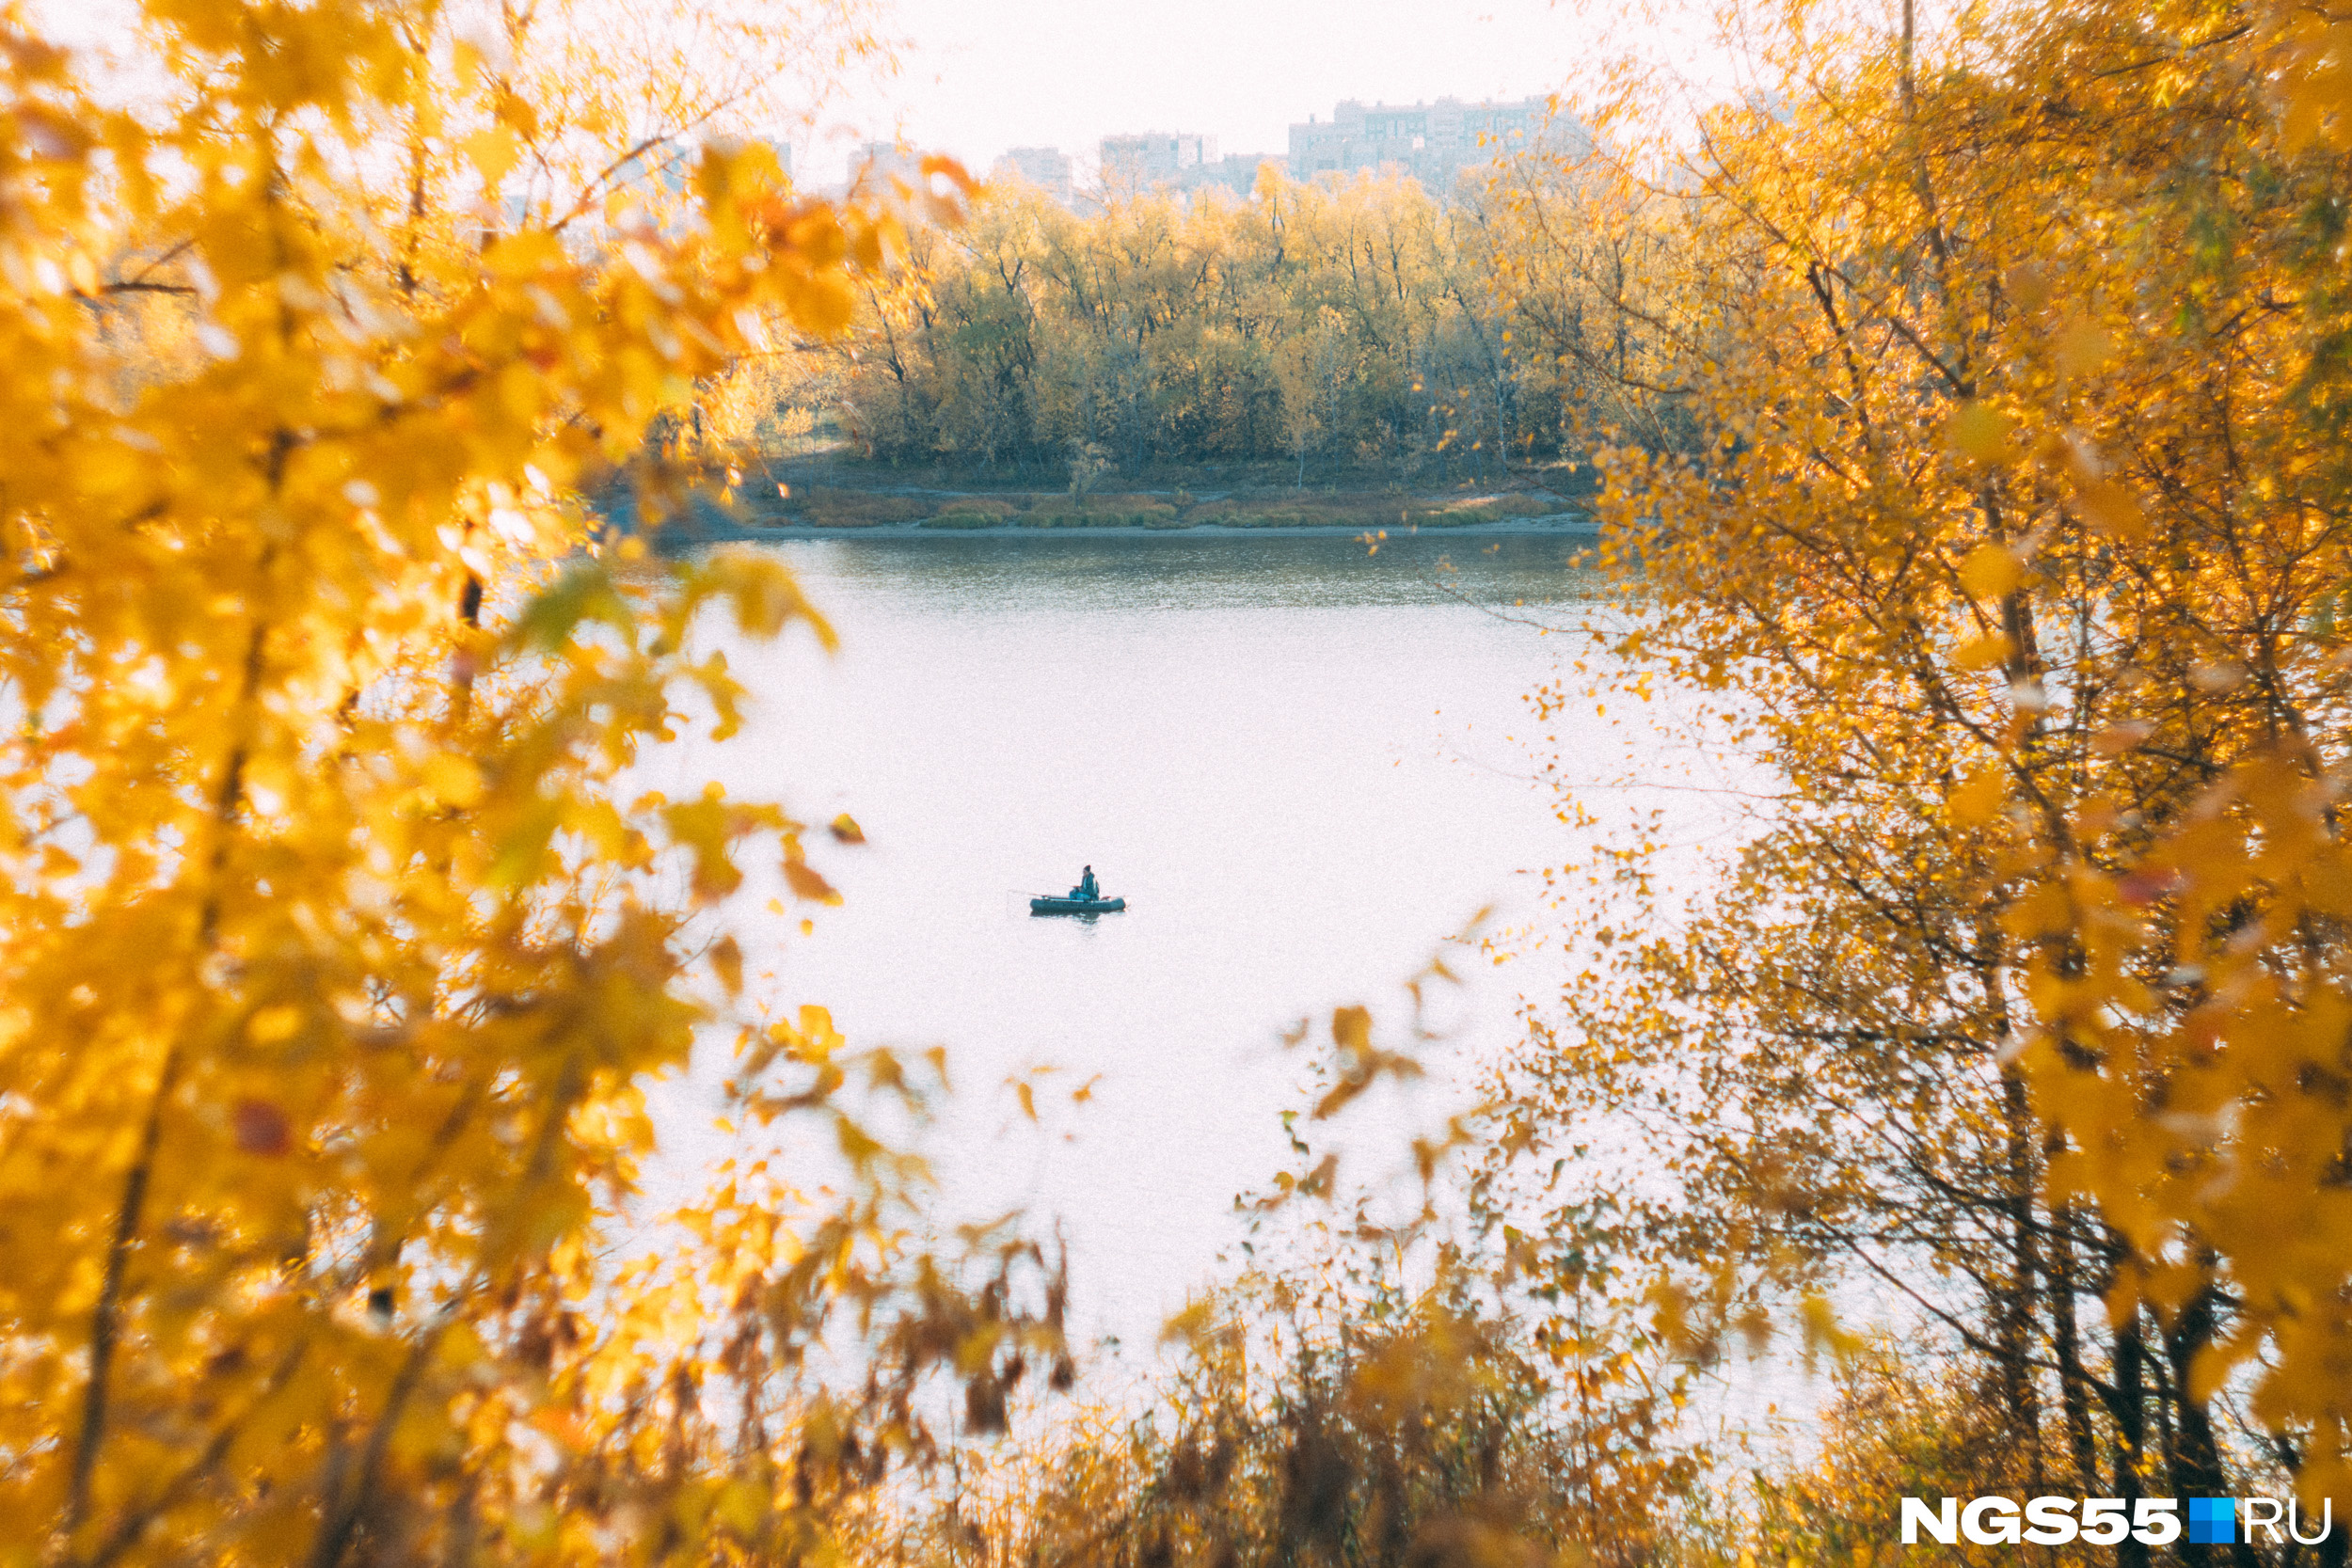 Осень — прекрасная пора для рыбалки! Можно заниматься любимым делом и любоваться красотой вокруг одновременно